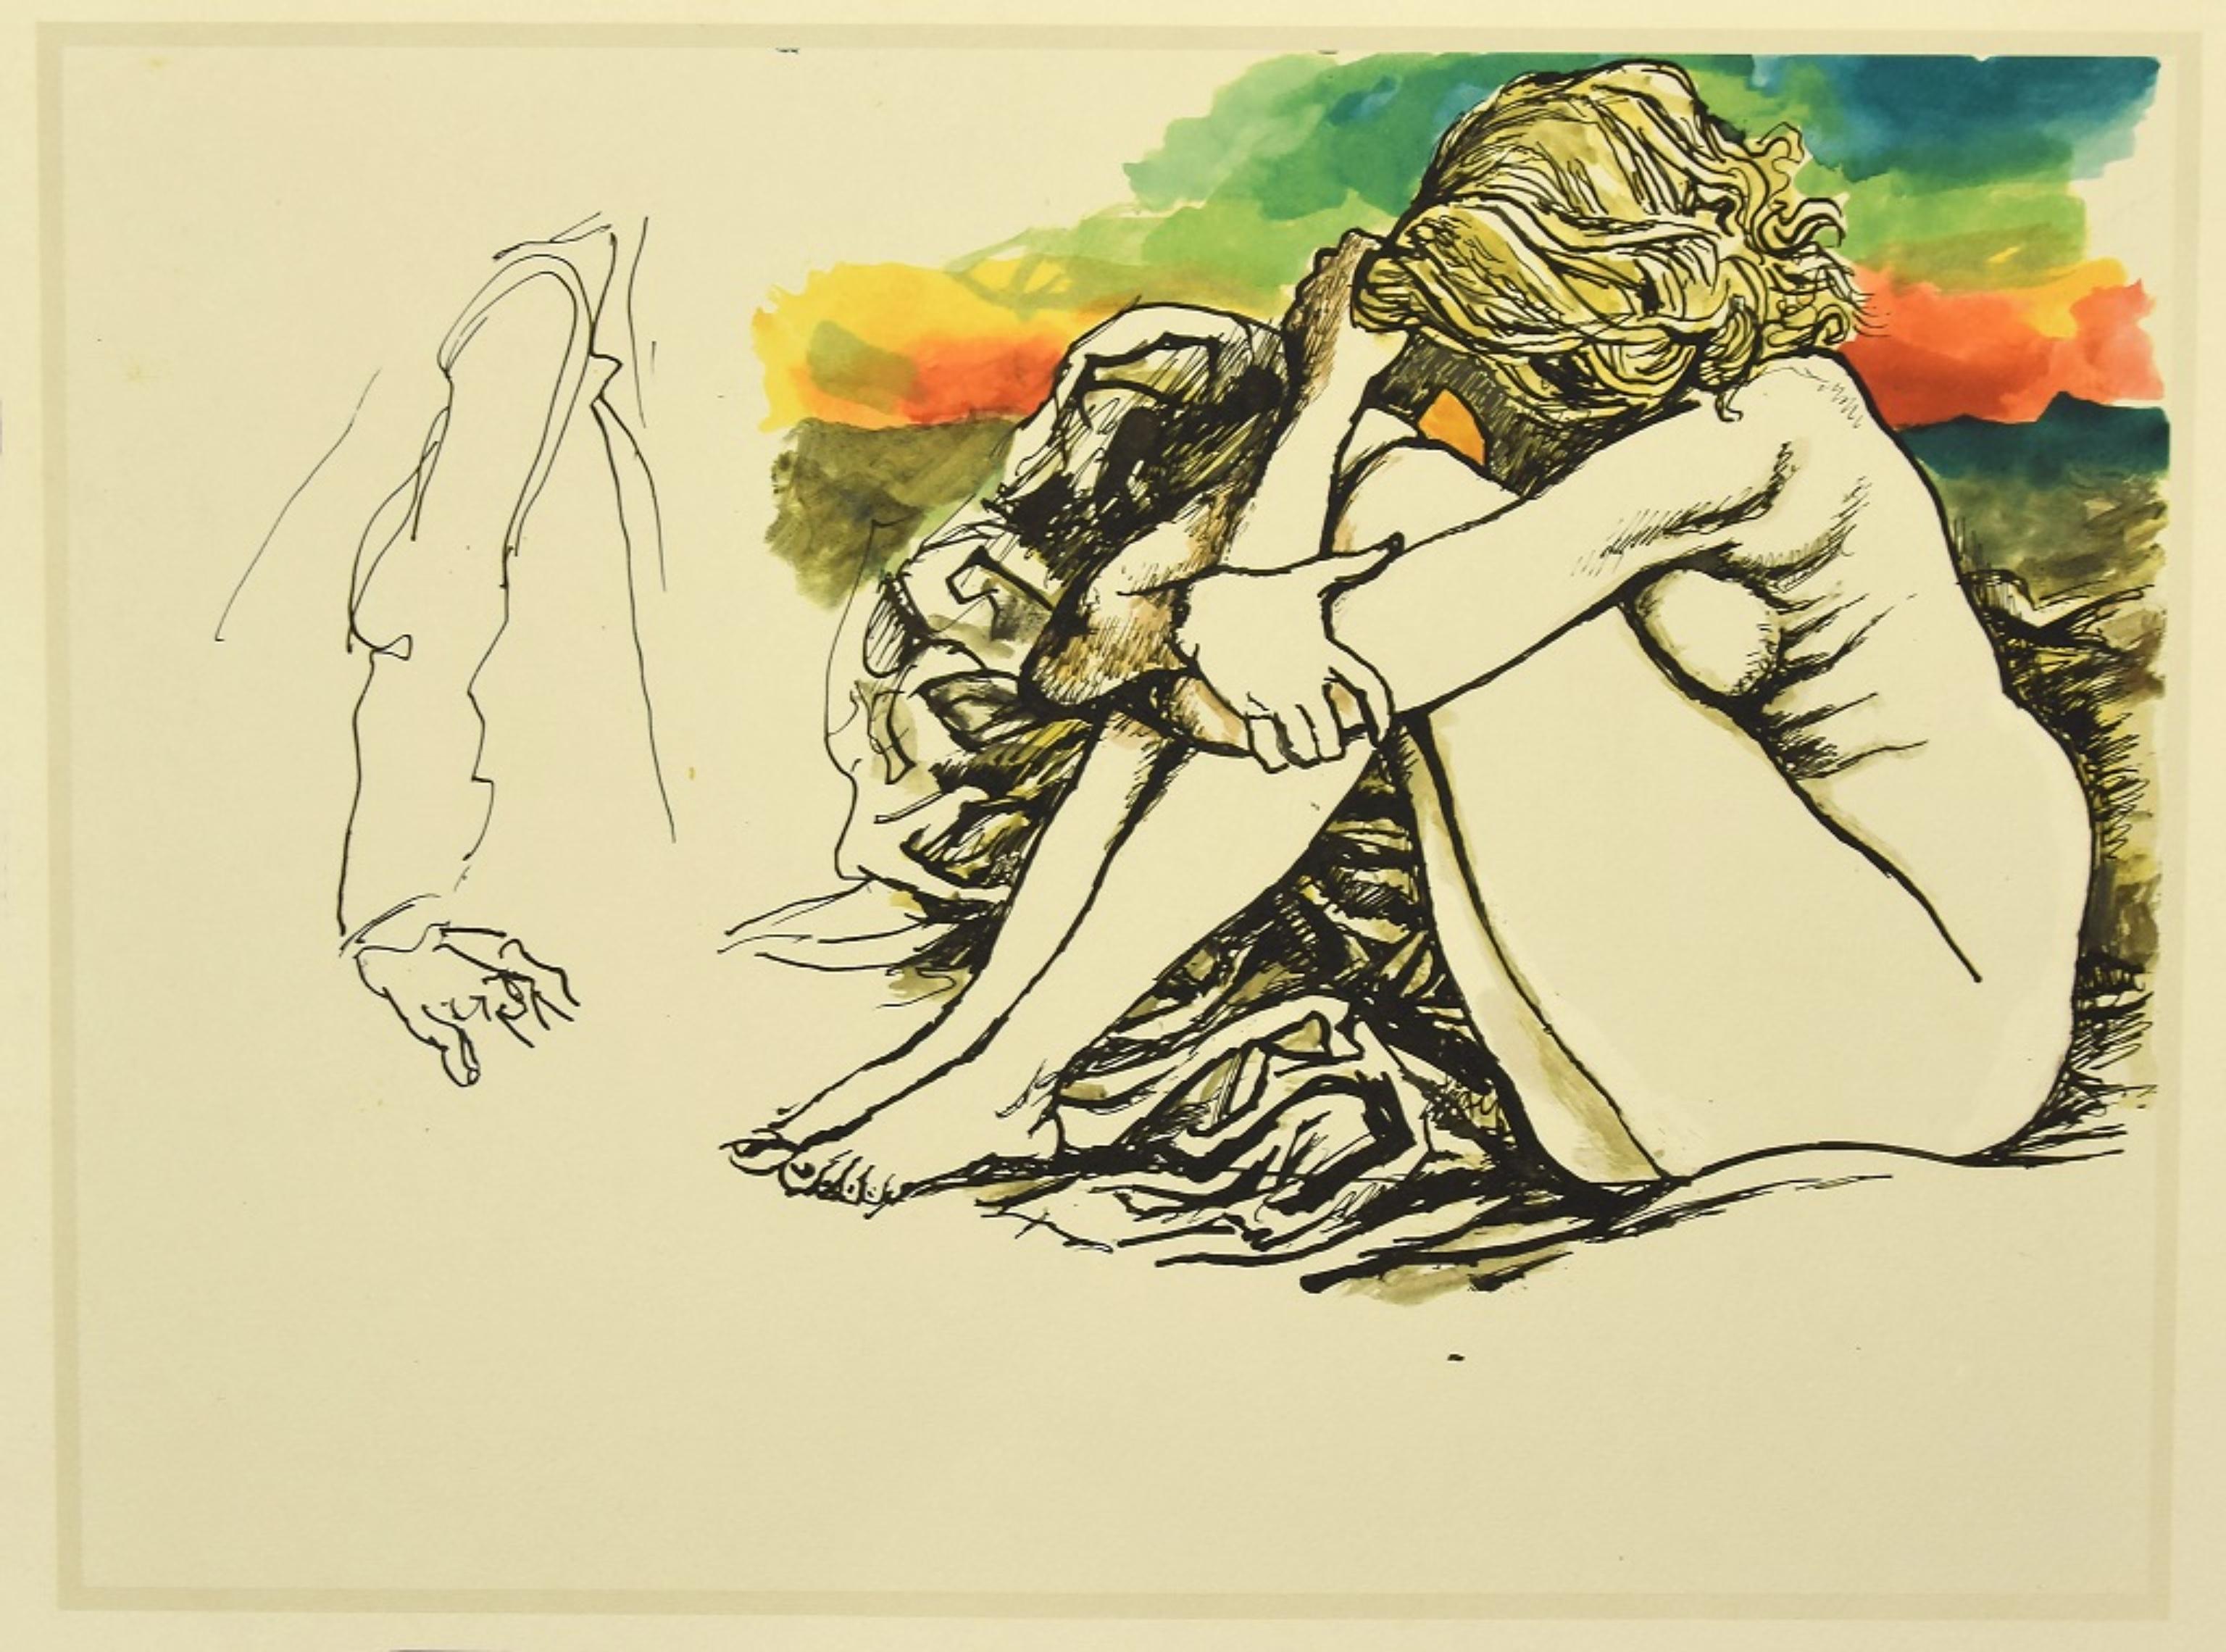 Nudity 1 ist ein Offsetdruck nach dem sizilianischen Künstler Renato Guttuso aus den 1980er Jahren. 

Gute Bedingungen.

Renato Guttuso (Bagheria, Palermo 1912 - Rom, 1987) war ein berühmter italienischer Maler des 20.
Guttuso, der in einer kleinen